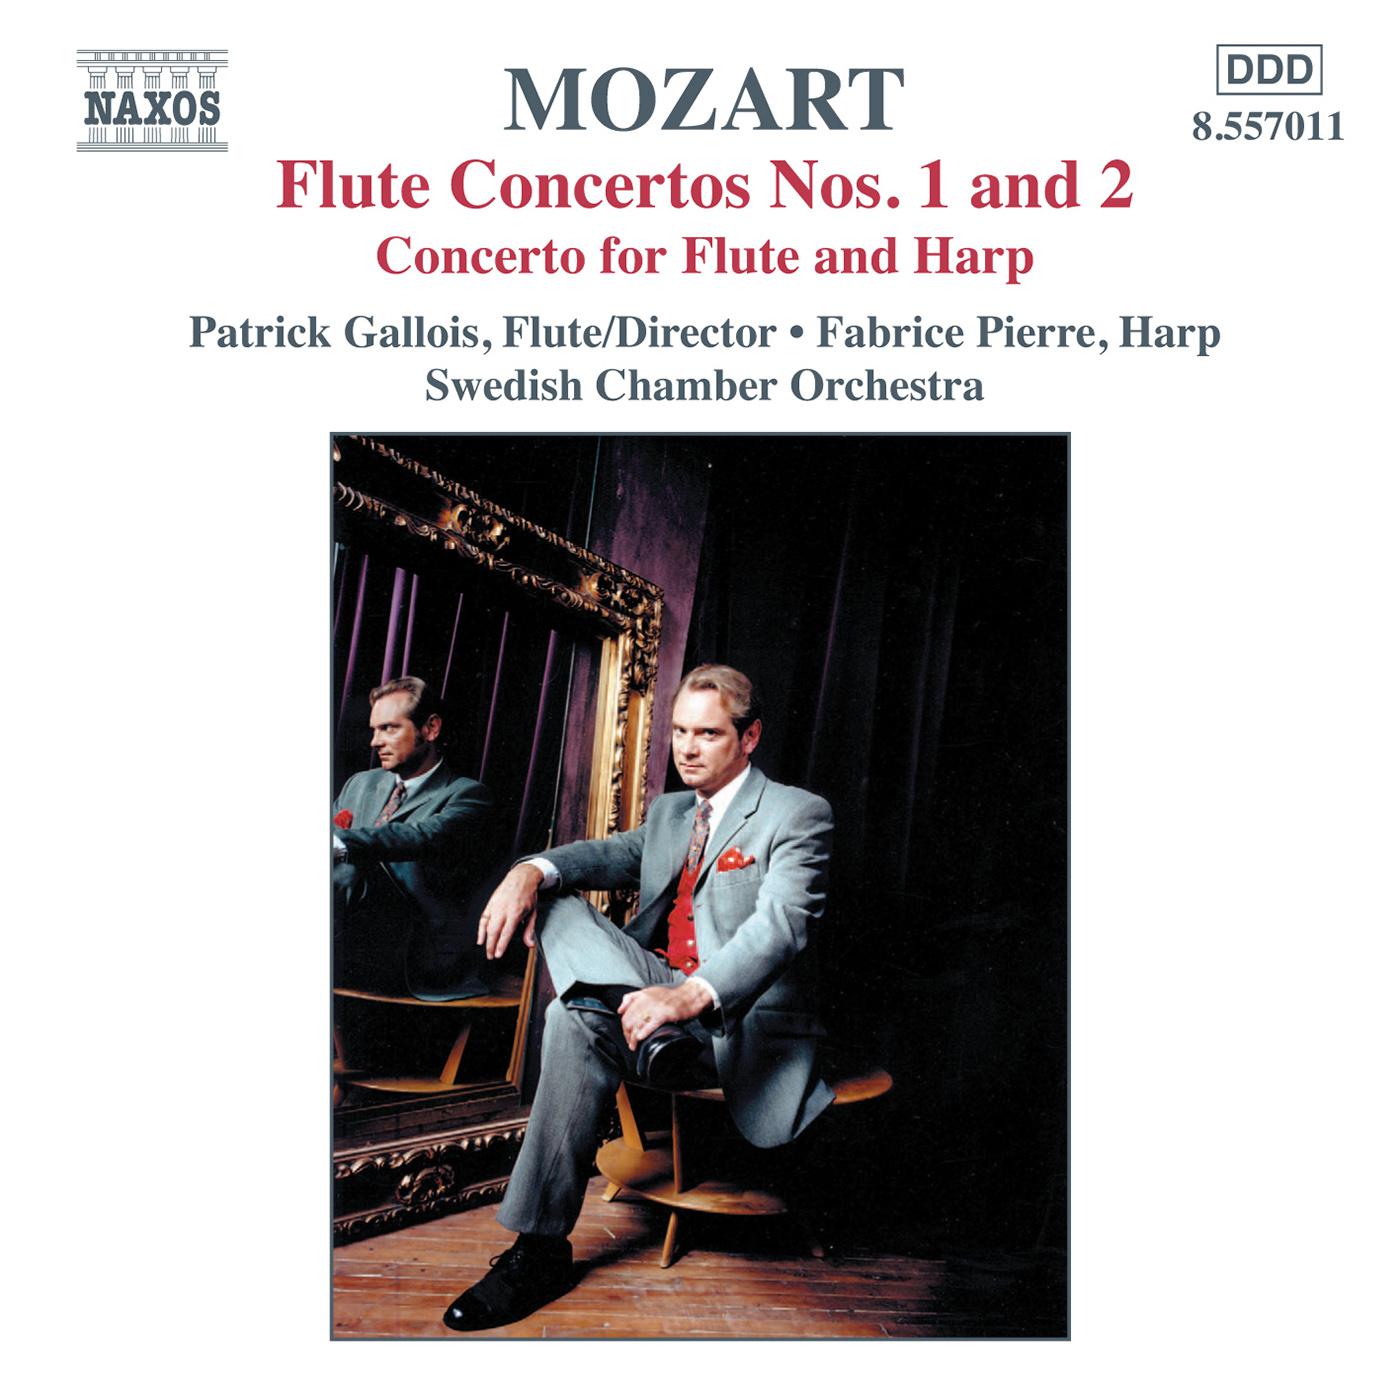 MOZART: Flute Concertos Nos. 1 and 2 / Concerto for Flute and Harp